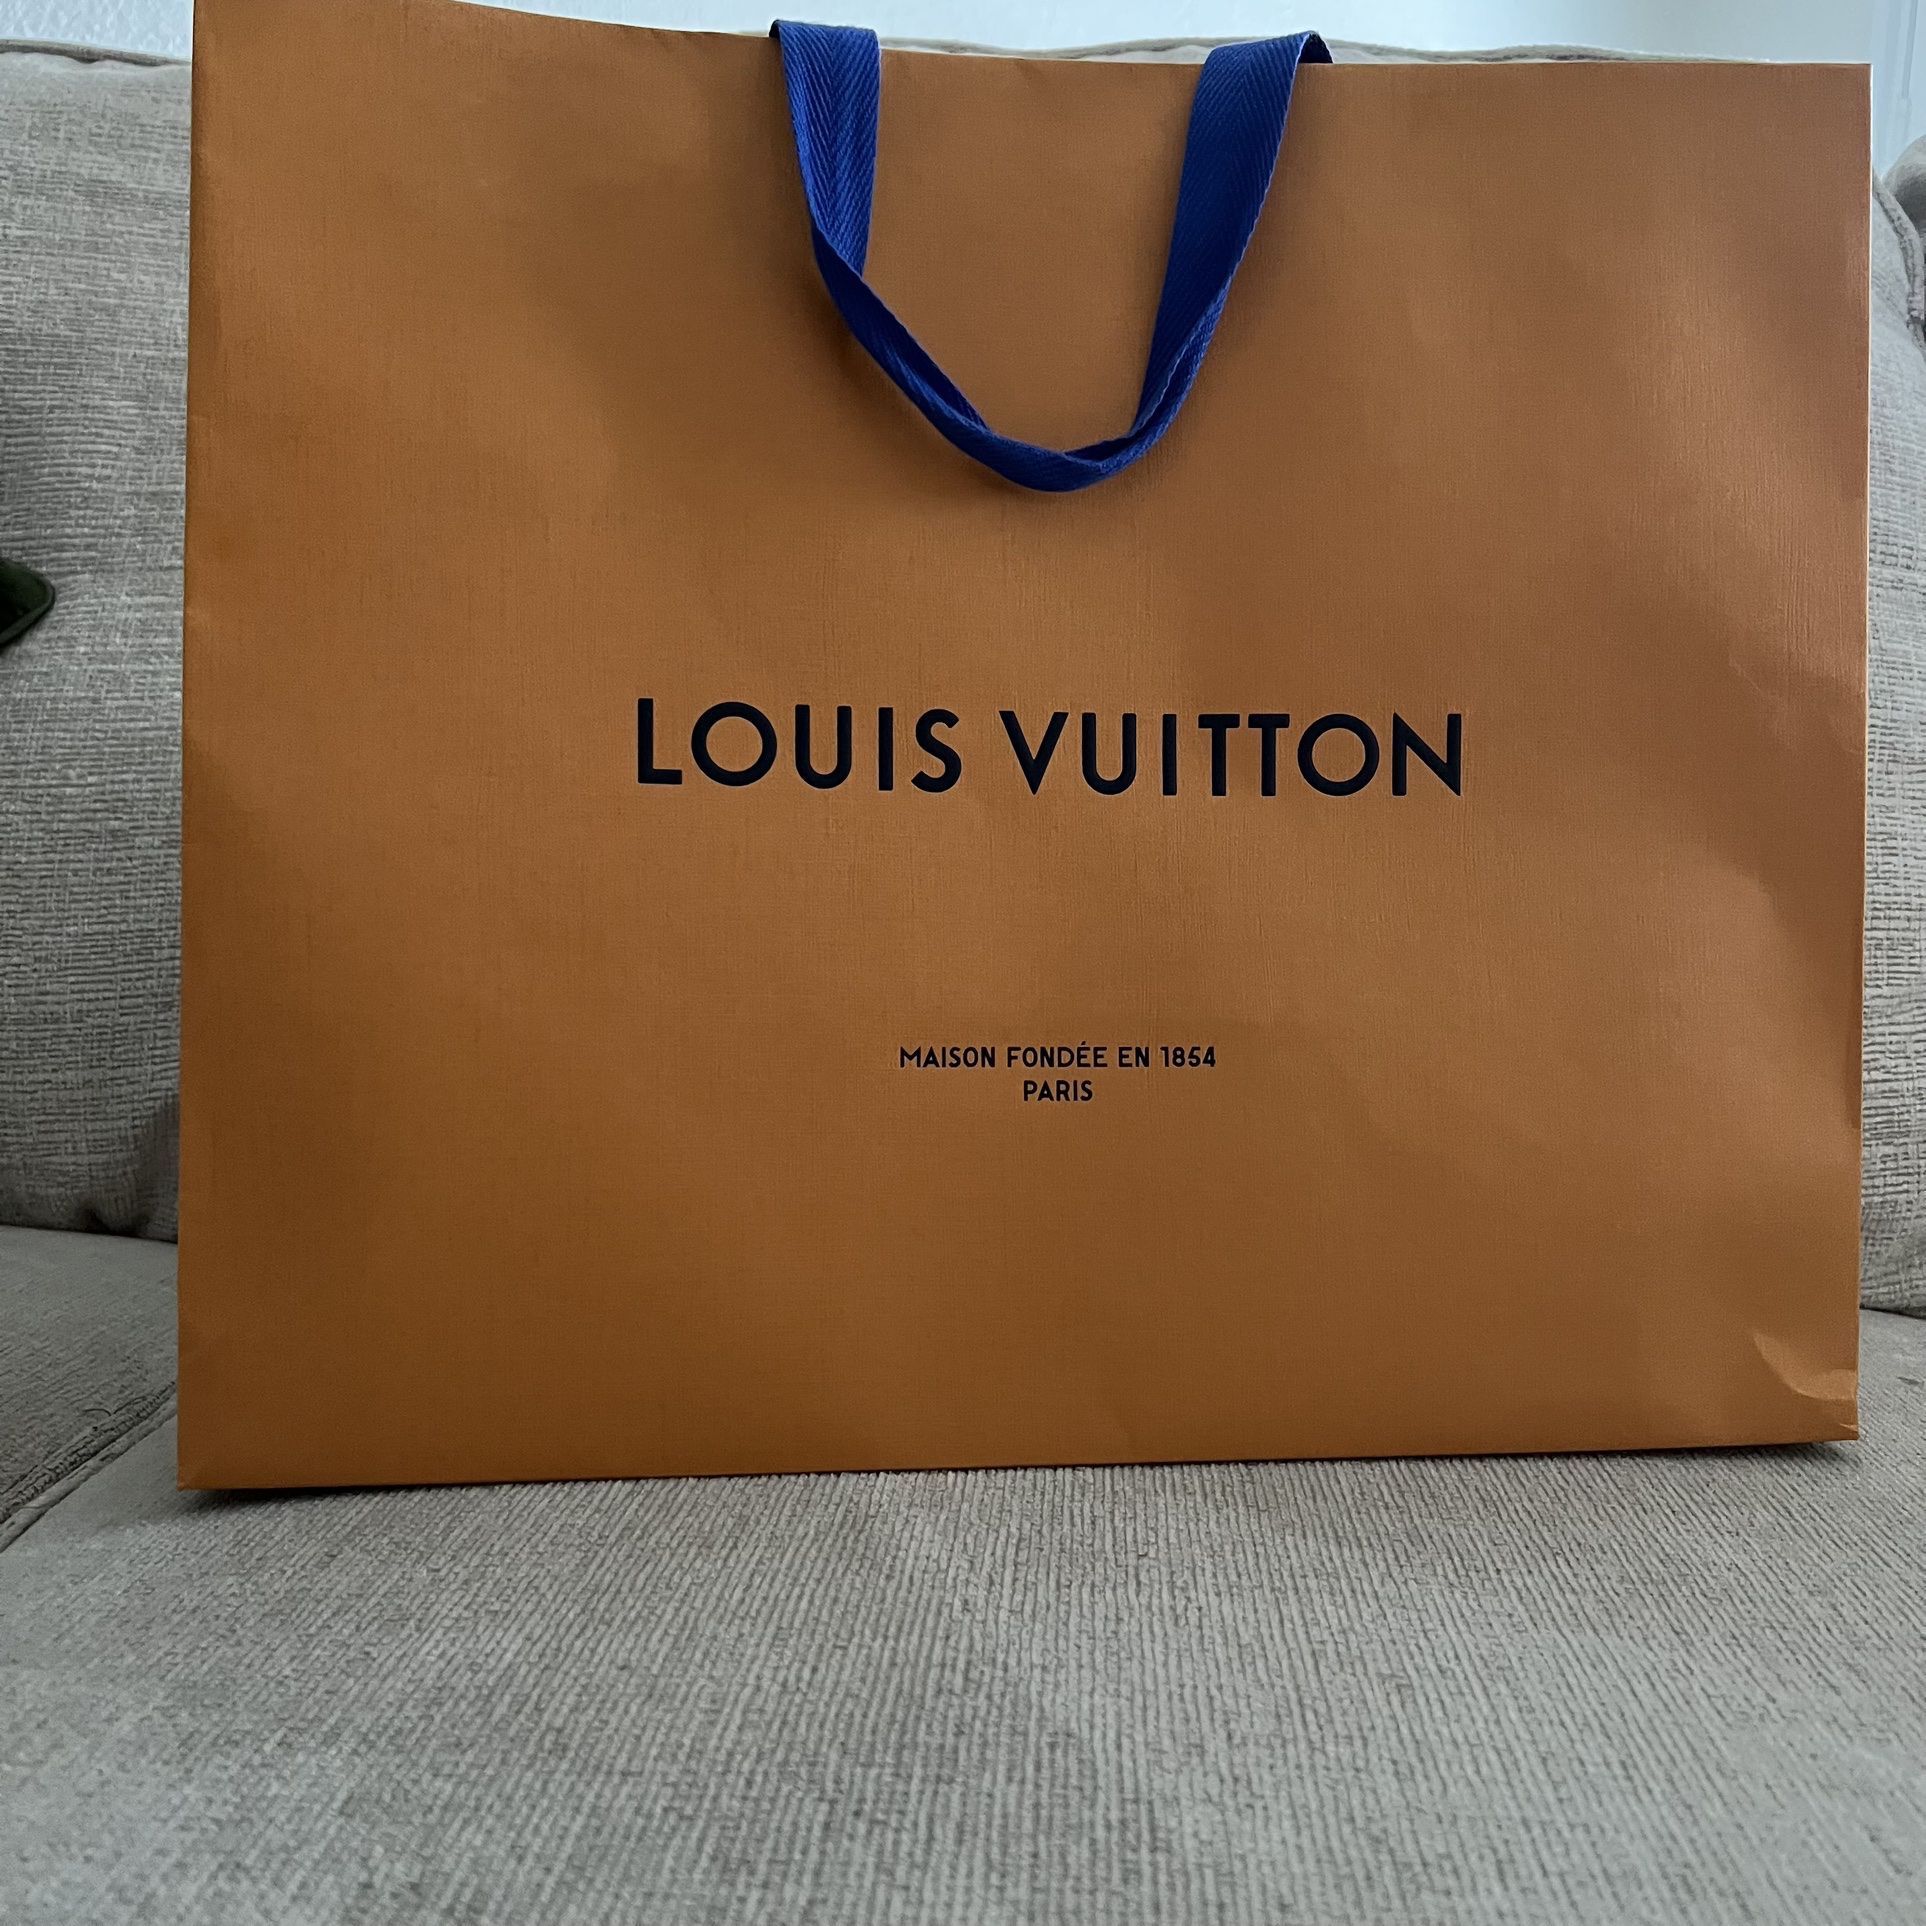 DIY Authentic Louis Vuitton Paper Bag